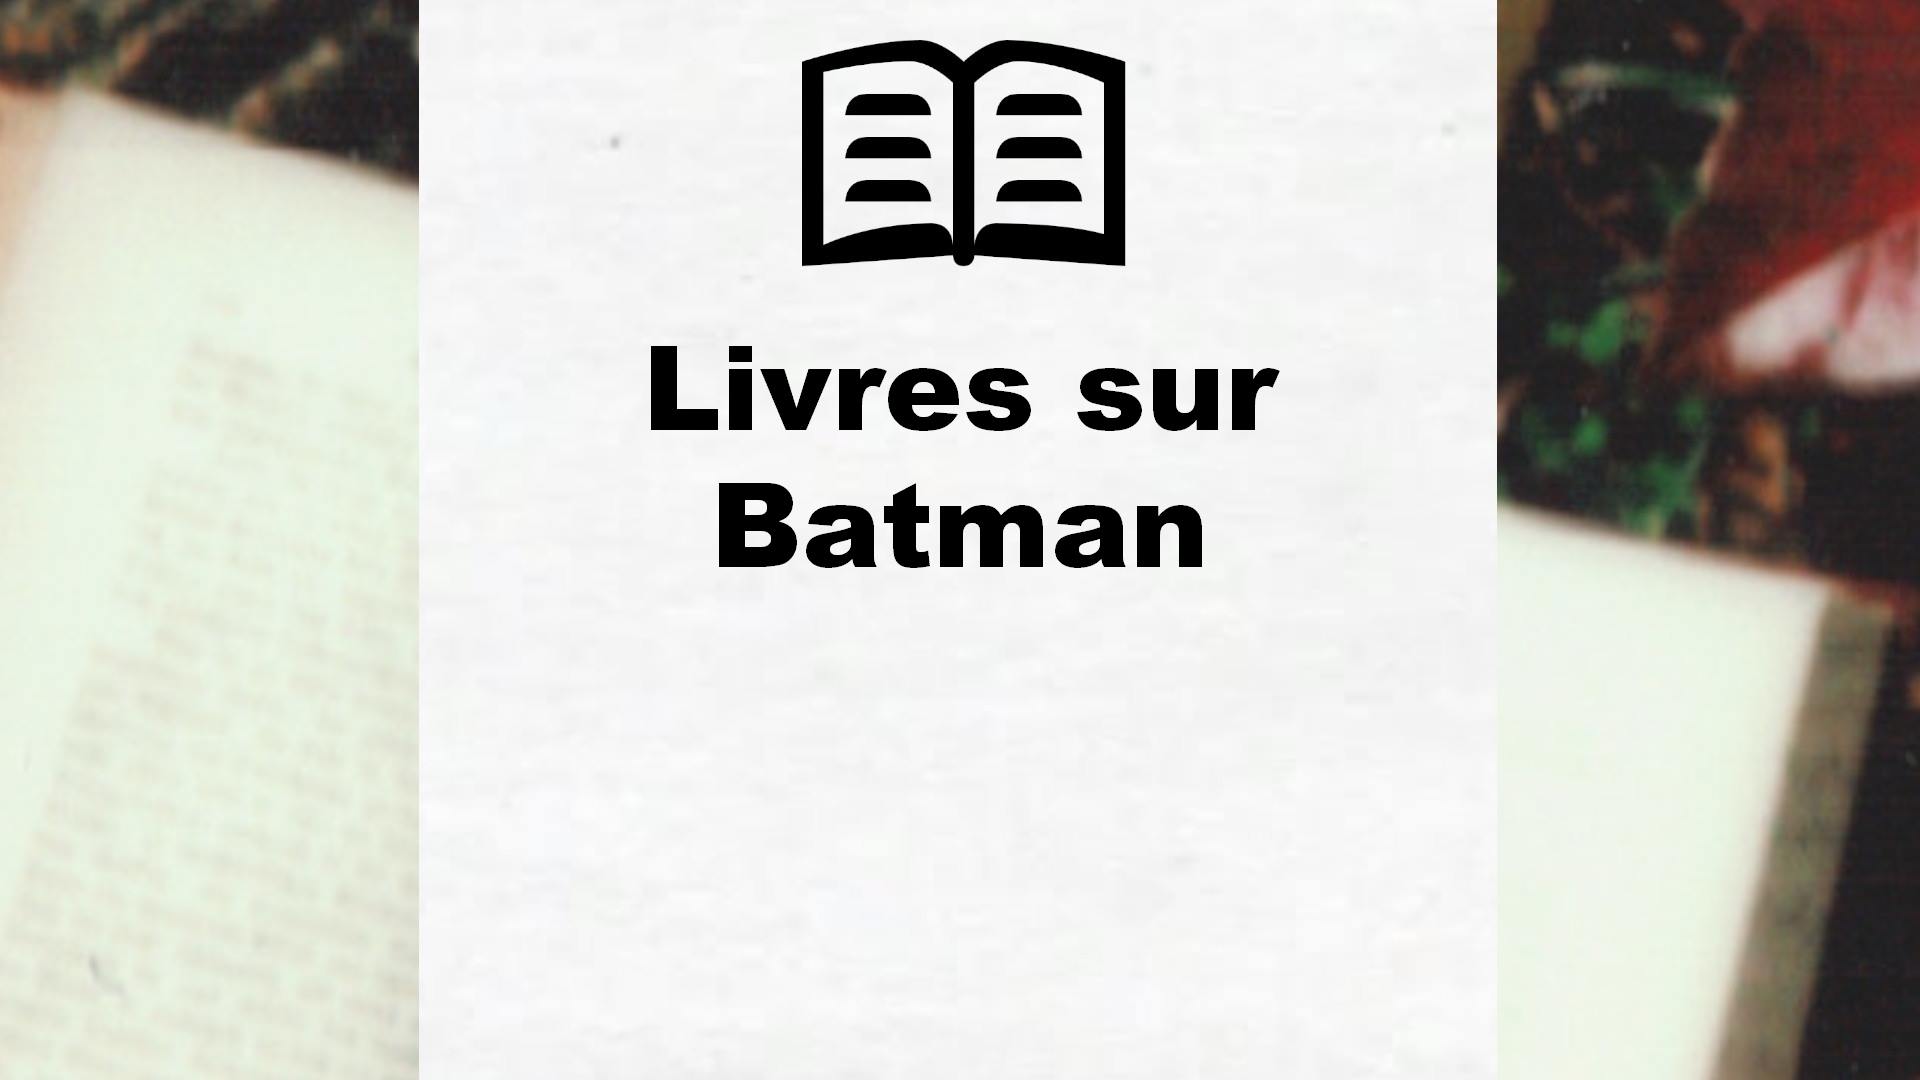 Livres sur Batman